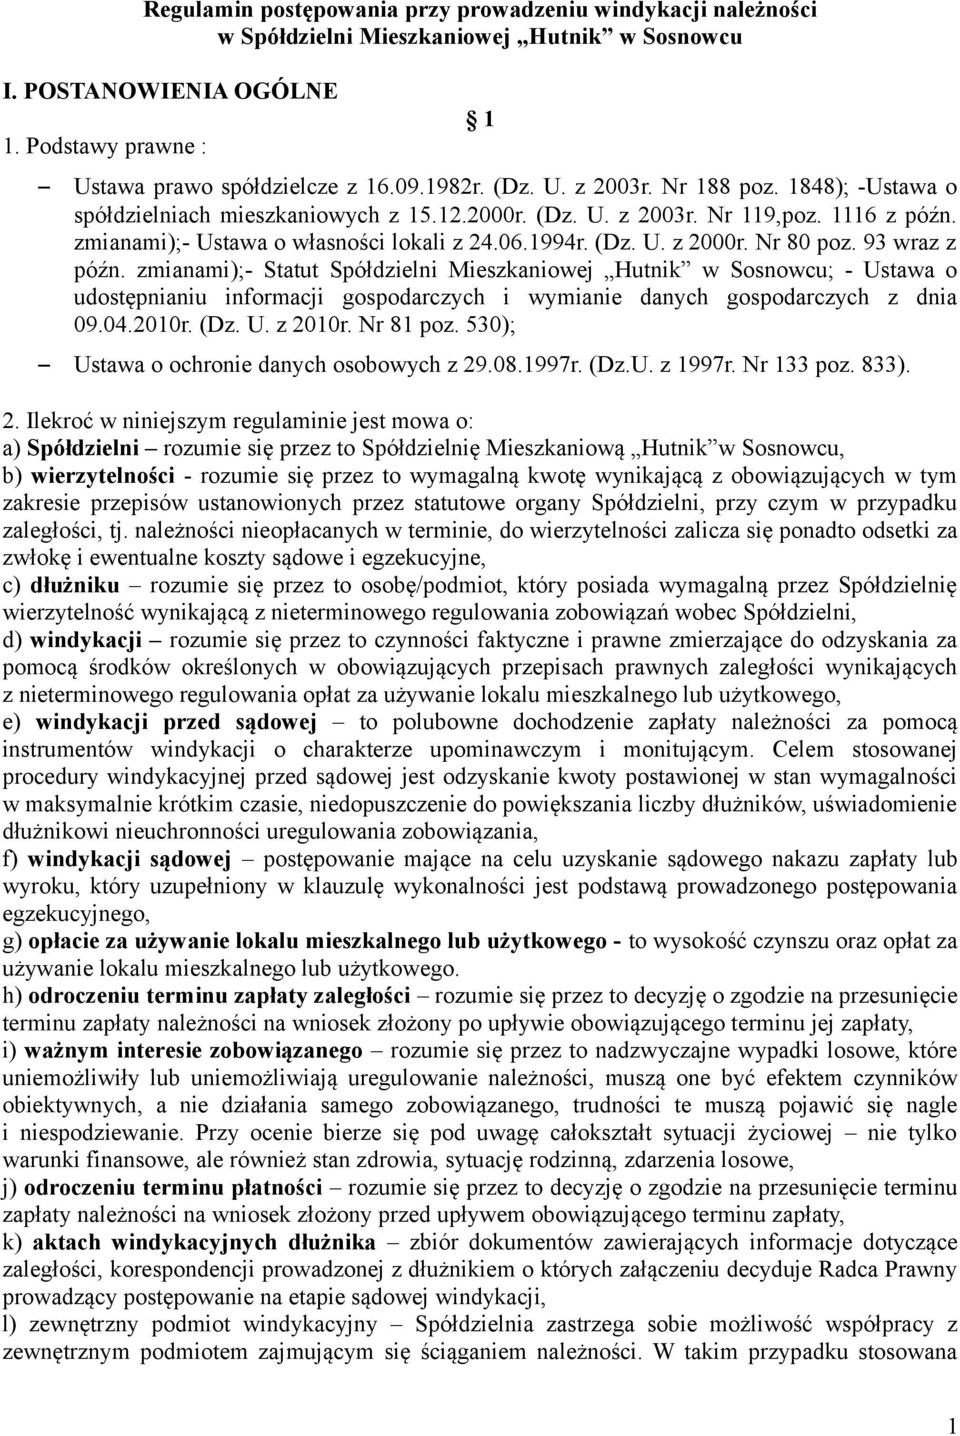 Nr 80 poz. 93 wraz z późn. zmianami);- Statut Spółdzielni Mieszkaniowej Hutnik w Sosnowcu; - Ustawa o udostępnianiu informacji gospodarczych i wymianie danych gospodarczych z dnia 09.04.2010r. (Dz. U. z 2010r.